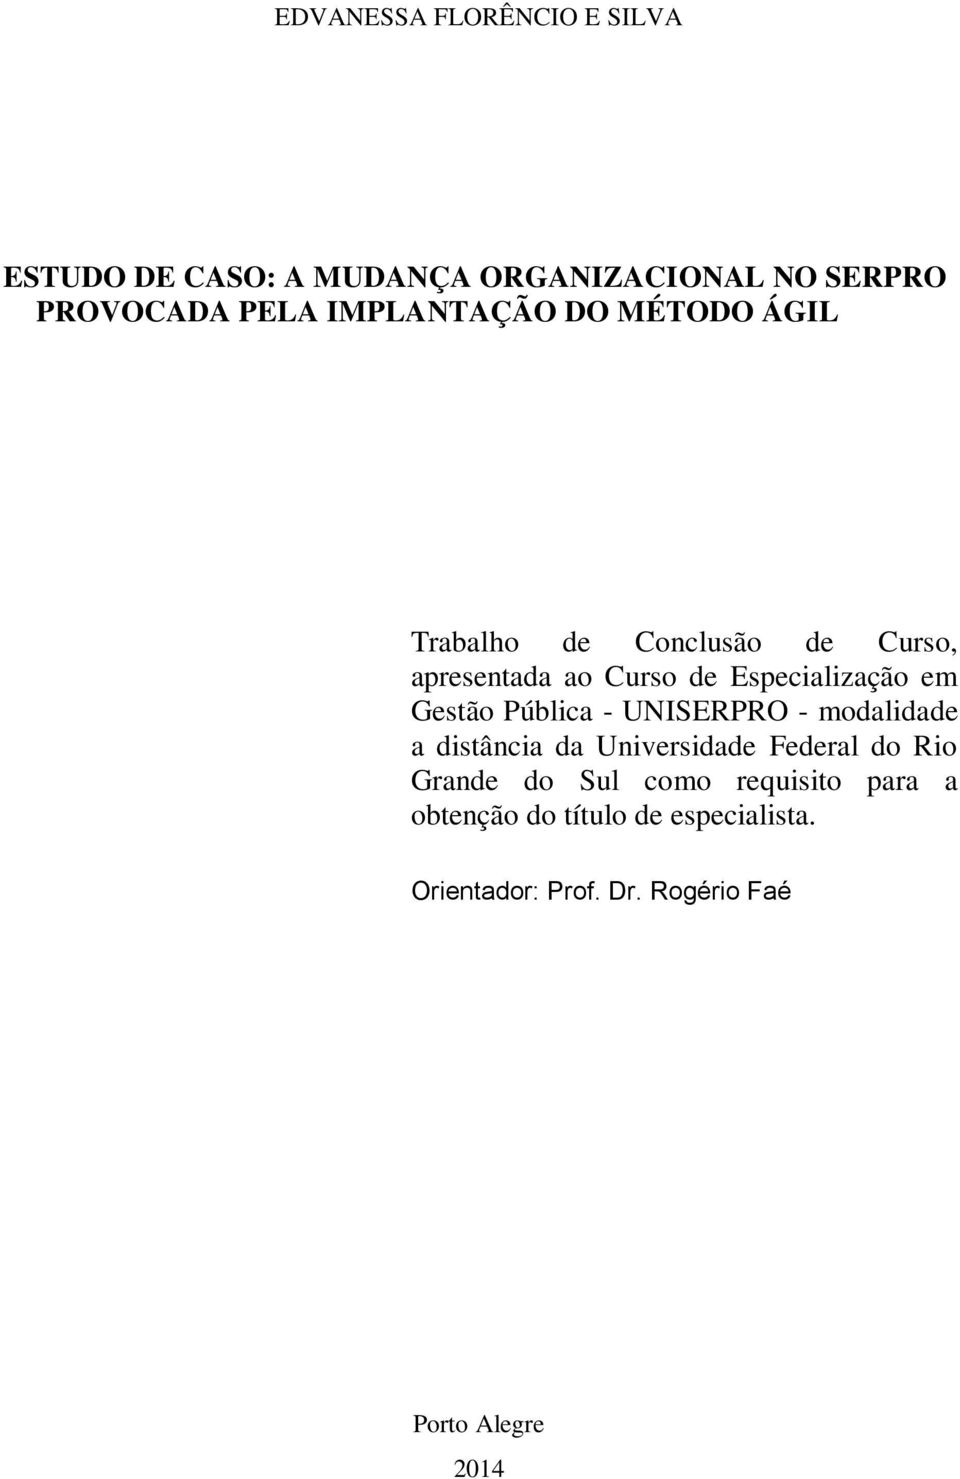 Gestão Pública - UNISERPRO - modalidade a distância da Universidade Federal do Rio Grande do Sul